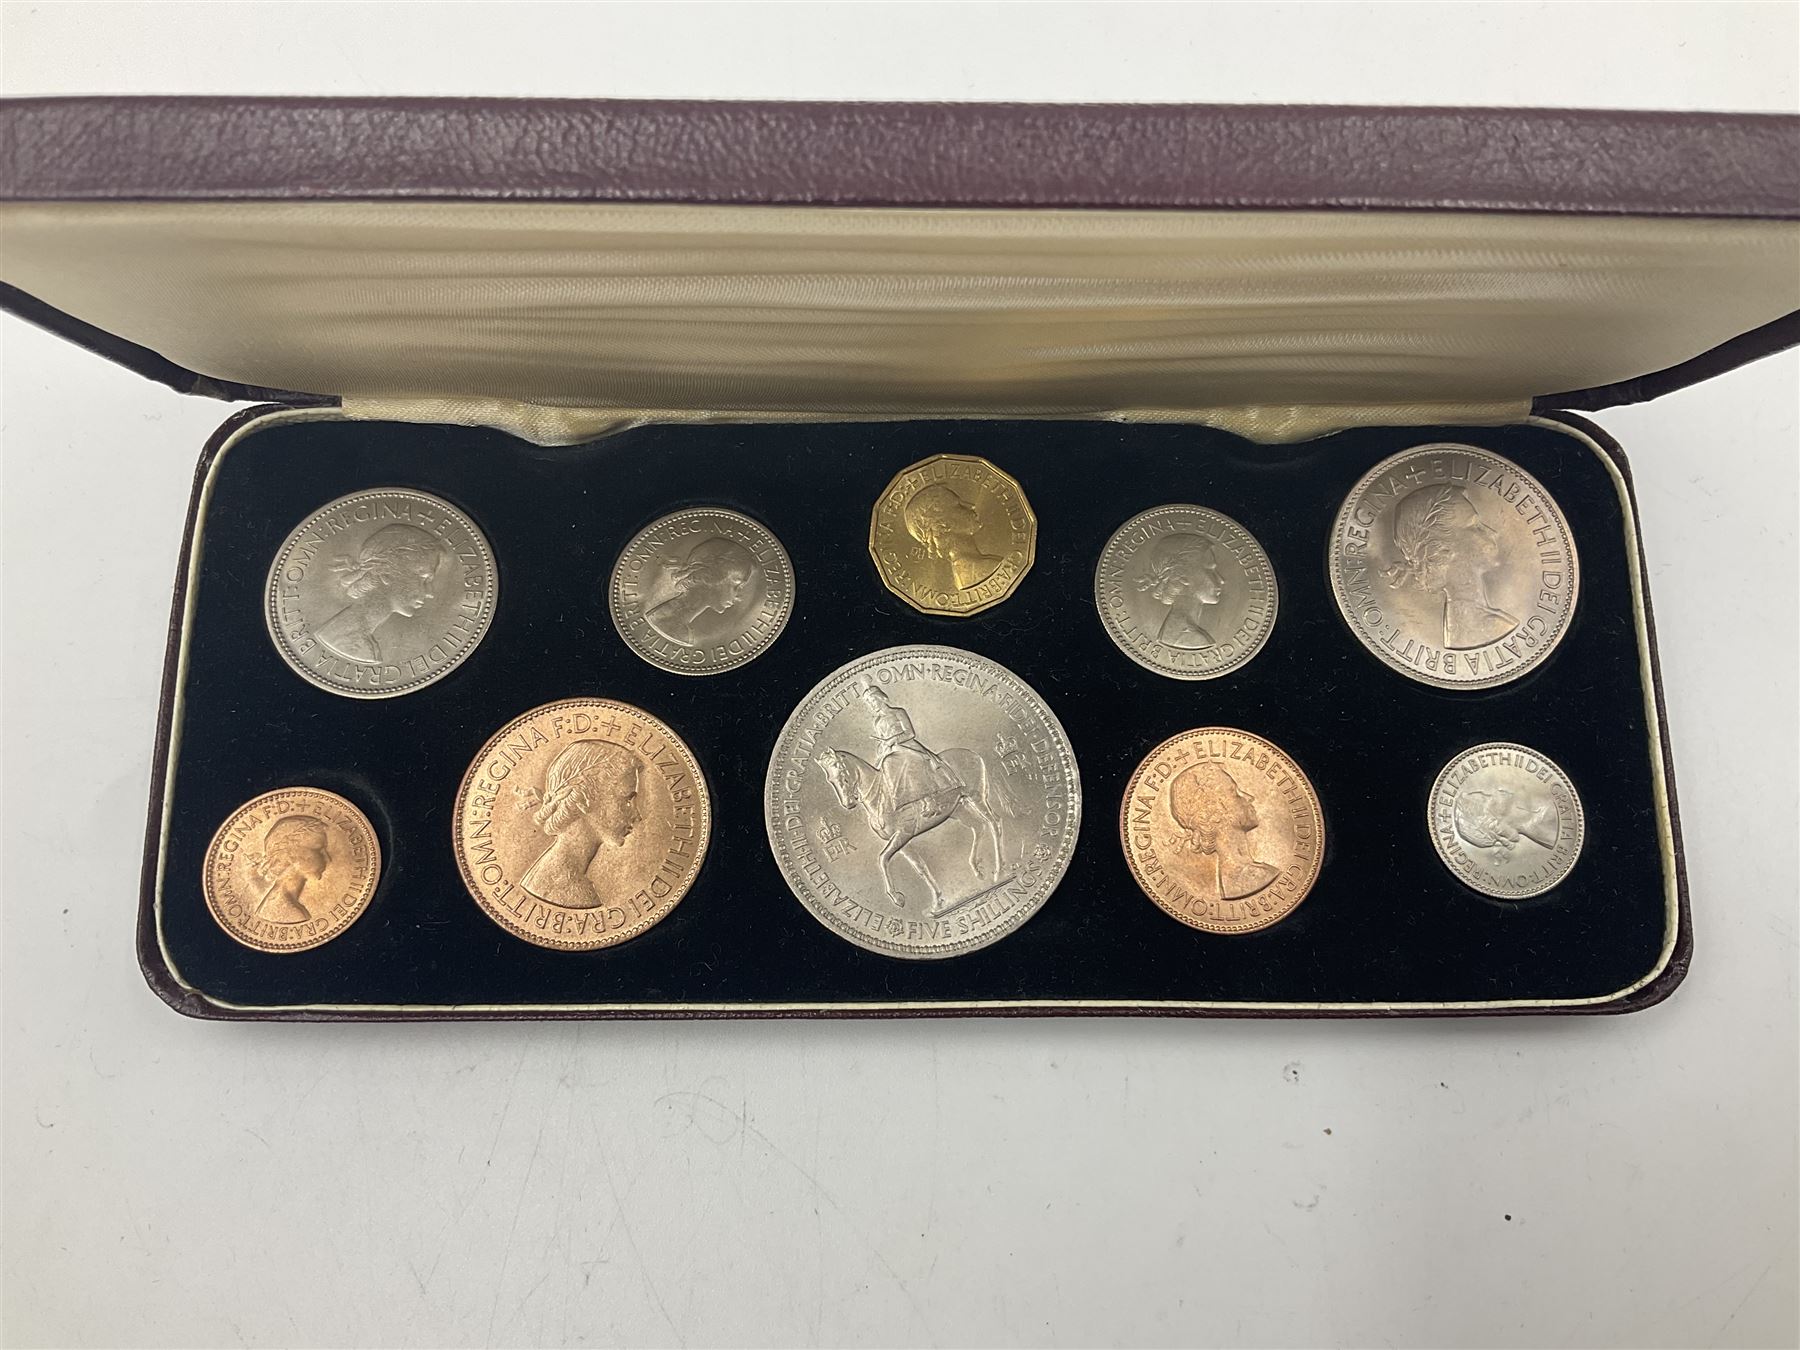 Queen Elizabeth II 1953 ten coin specimen set - Image 3 of 4